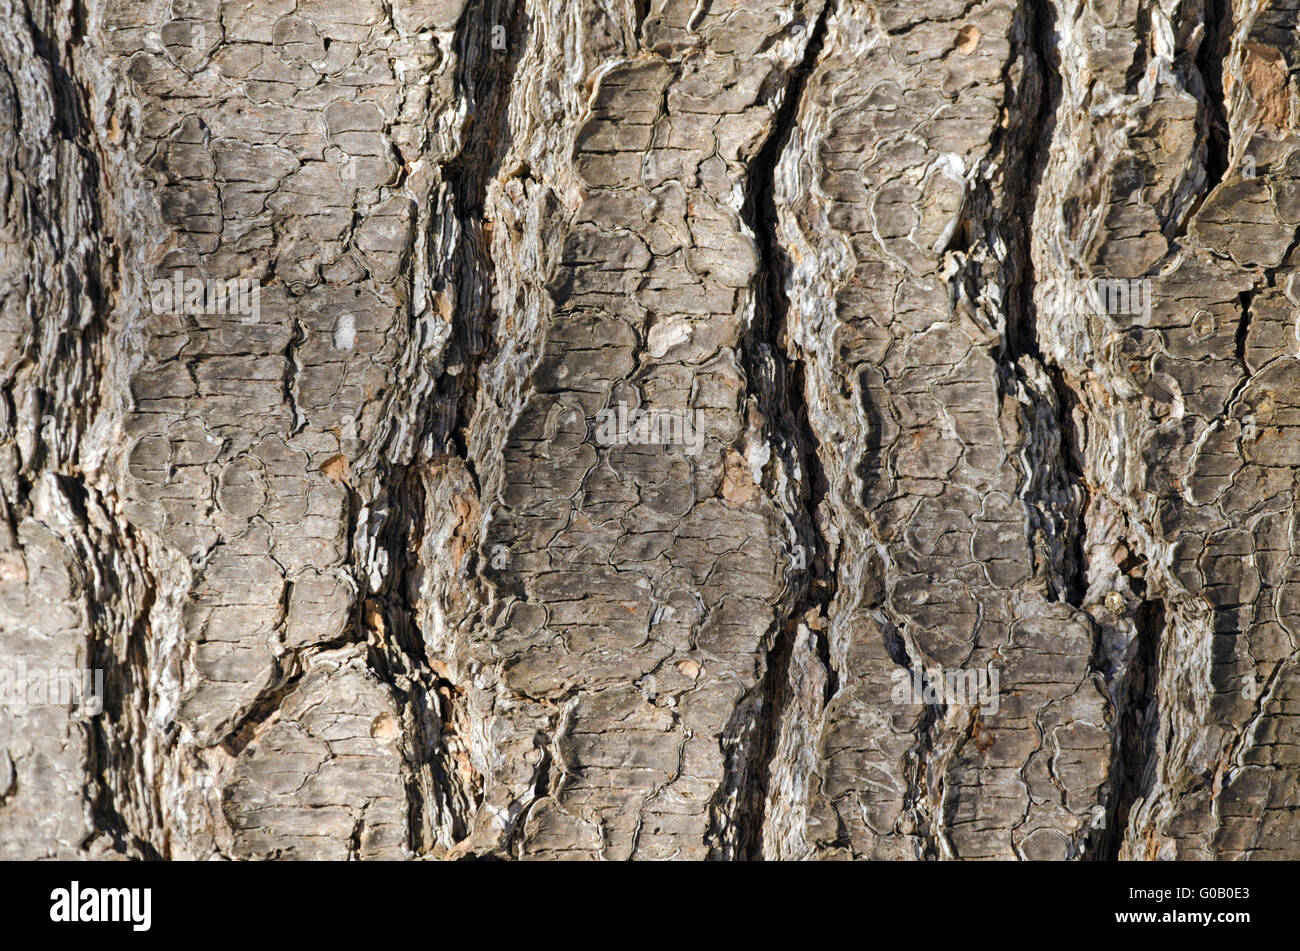 Bark Tree texture Stock Photo